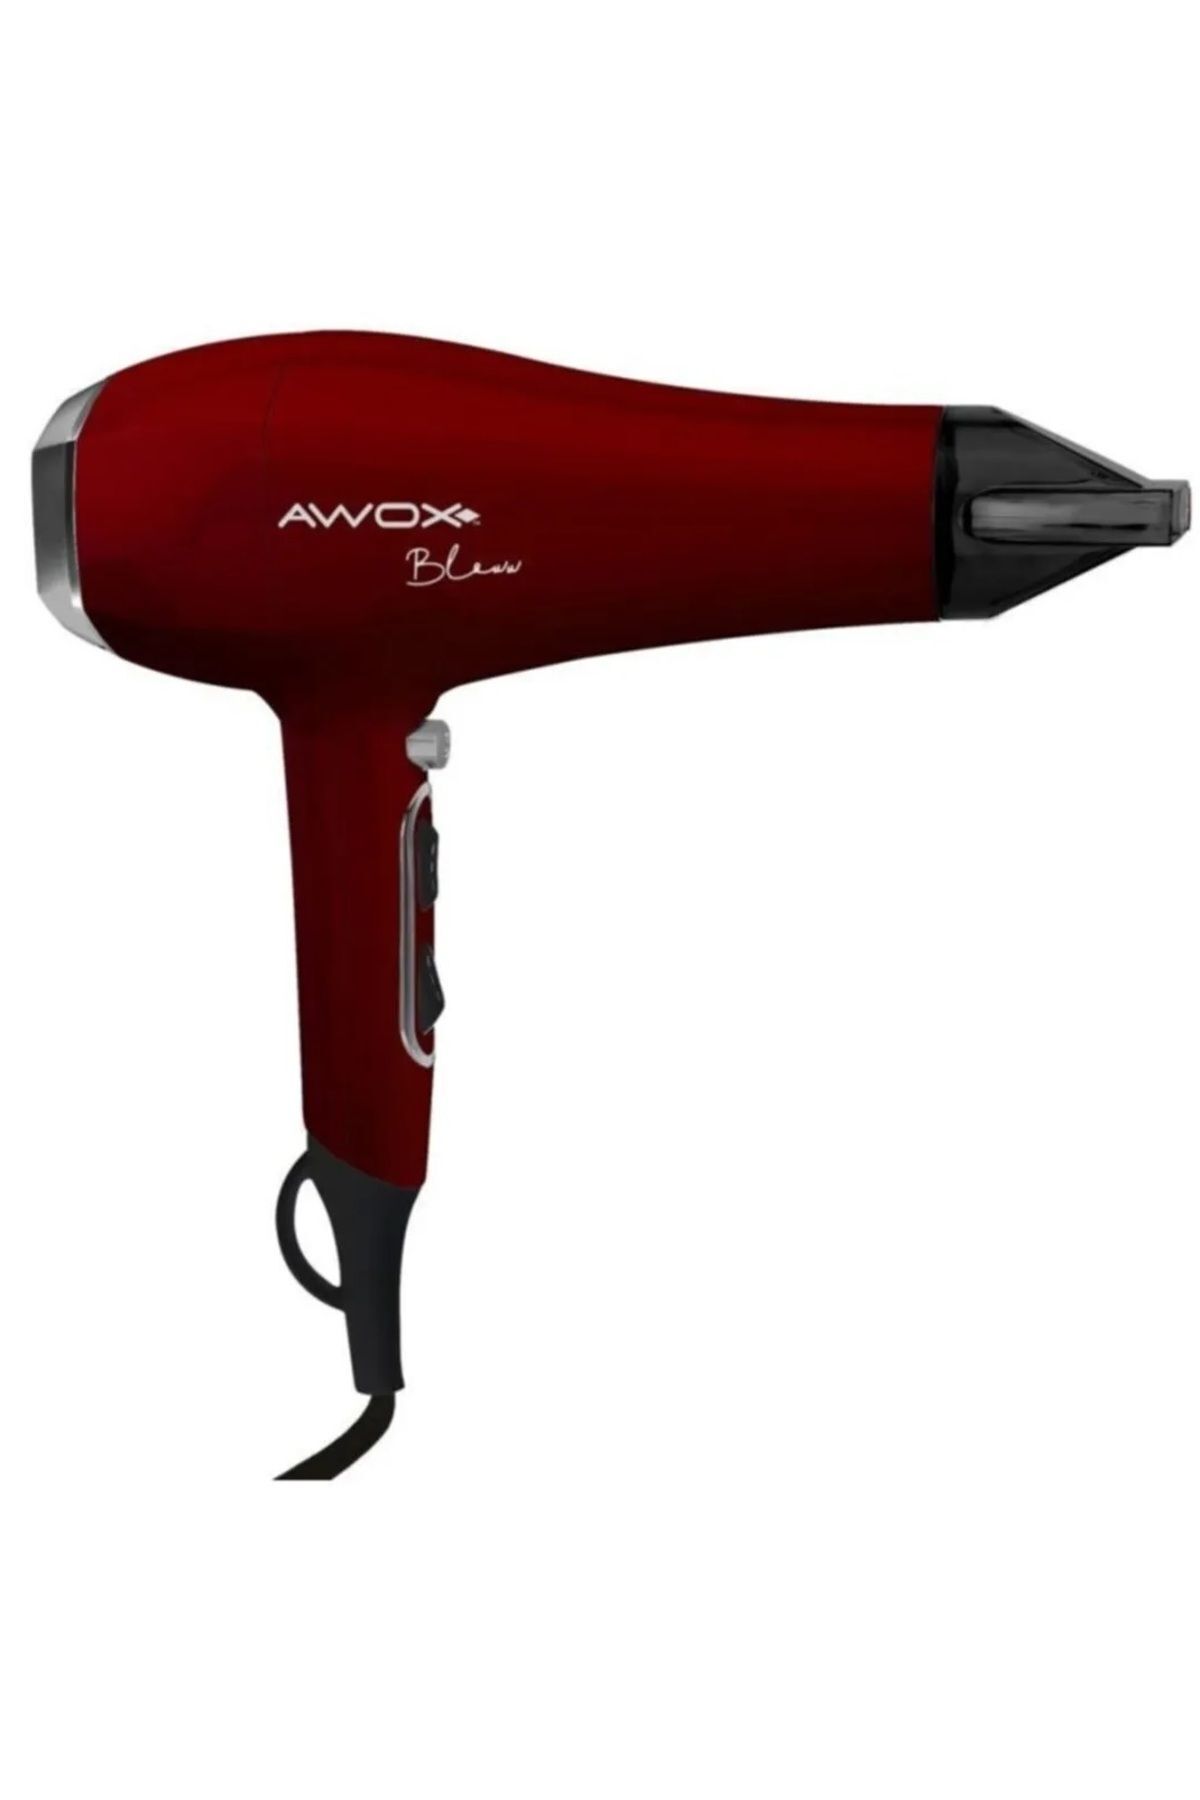 AWOX Axıon Saç Kurutma Makinası 9003 Kırmızı